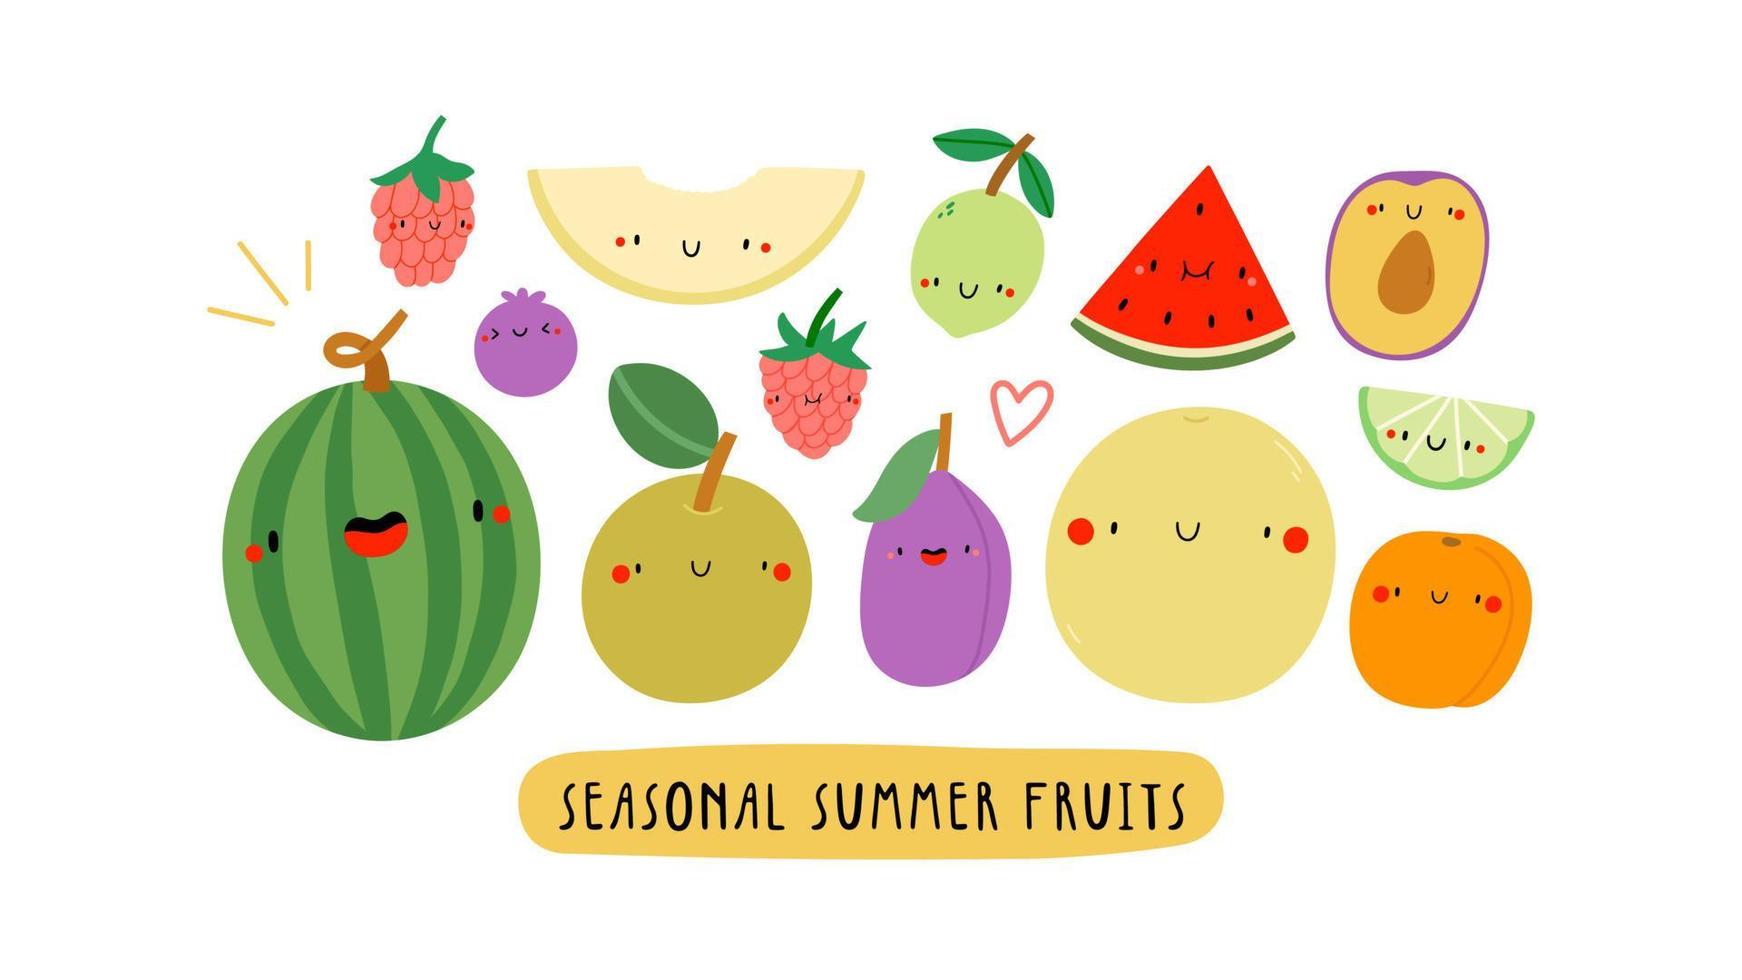 leuke illustratie met seizoensgebonden zomerfruit op een witte achtergrond. smiley stripfiguren voedsel - watermeloen, framboos, pruim, Aziatische peer, abrikoos, meloen, limoen. gezonde vruchtenbanner. vector